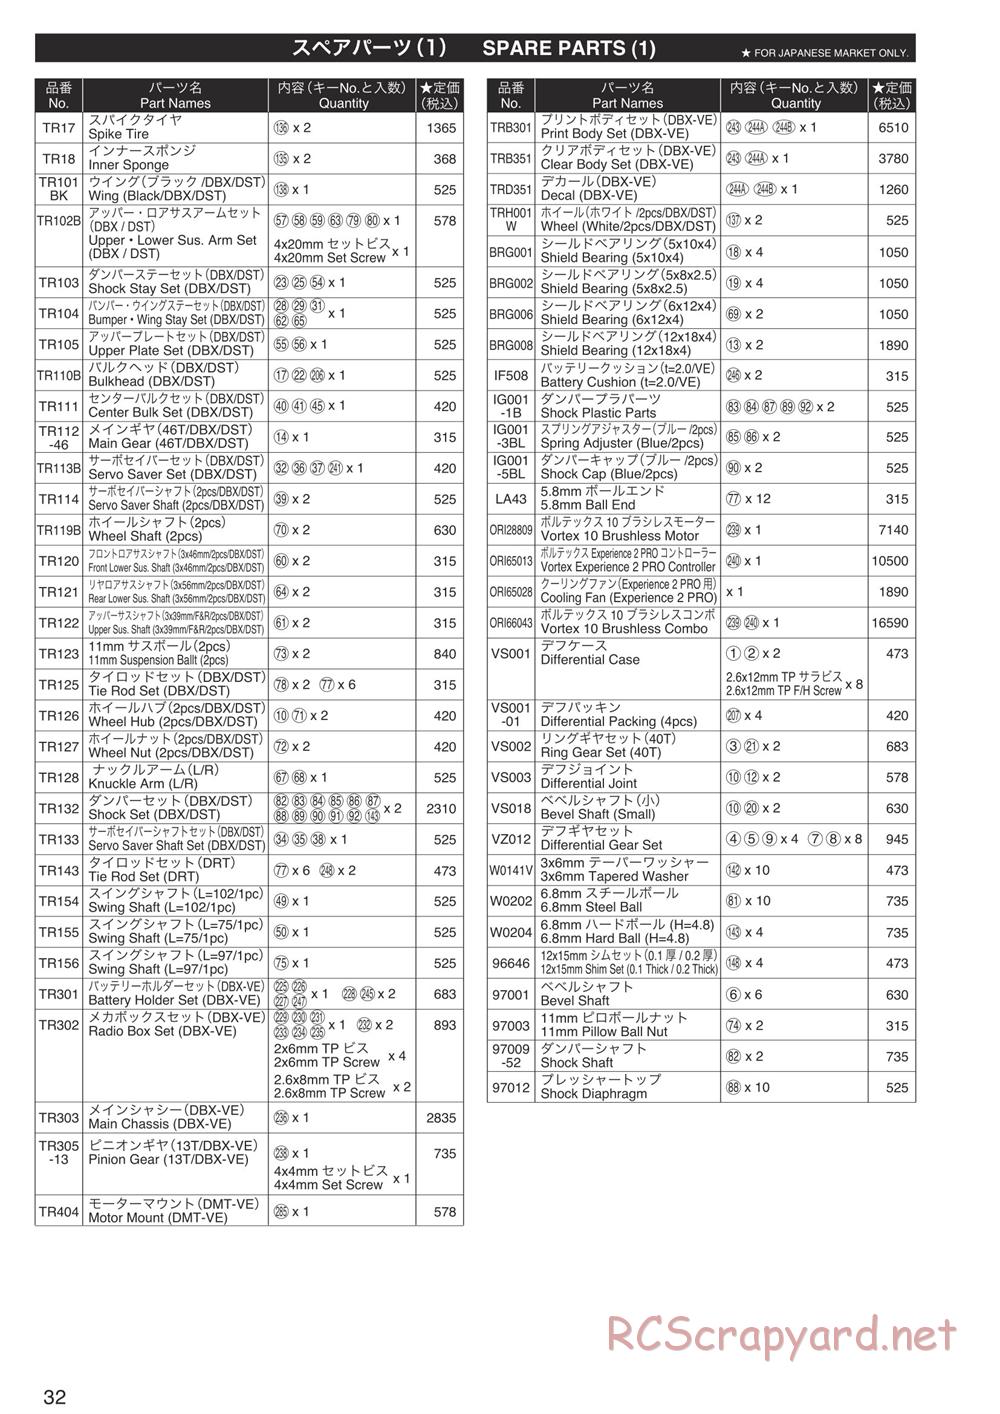 Kyosho - DBX-VE - Parts List - Page 1